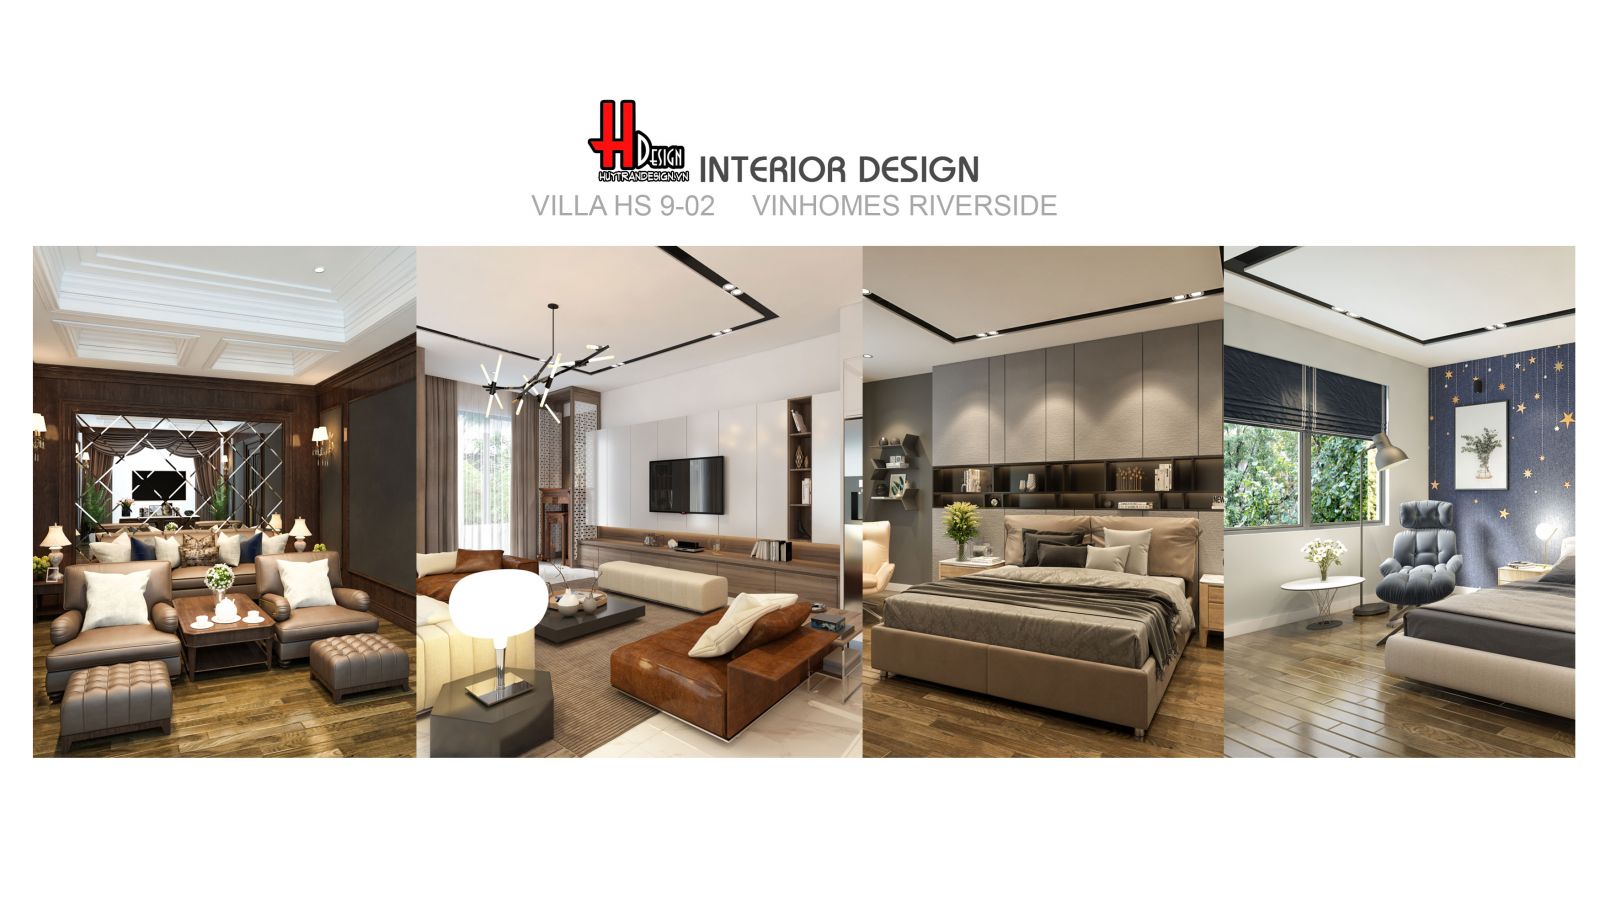 Thiết kế nội thất biệt thự bán hiện đại tại Vinhomes Riverside, Long Biên, Hà Nội của đơn vị tư vấn thiết kế nội ngoại thất Huytrandesign